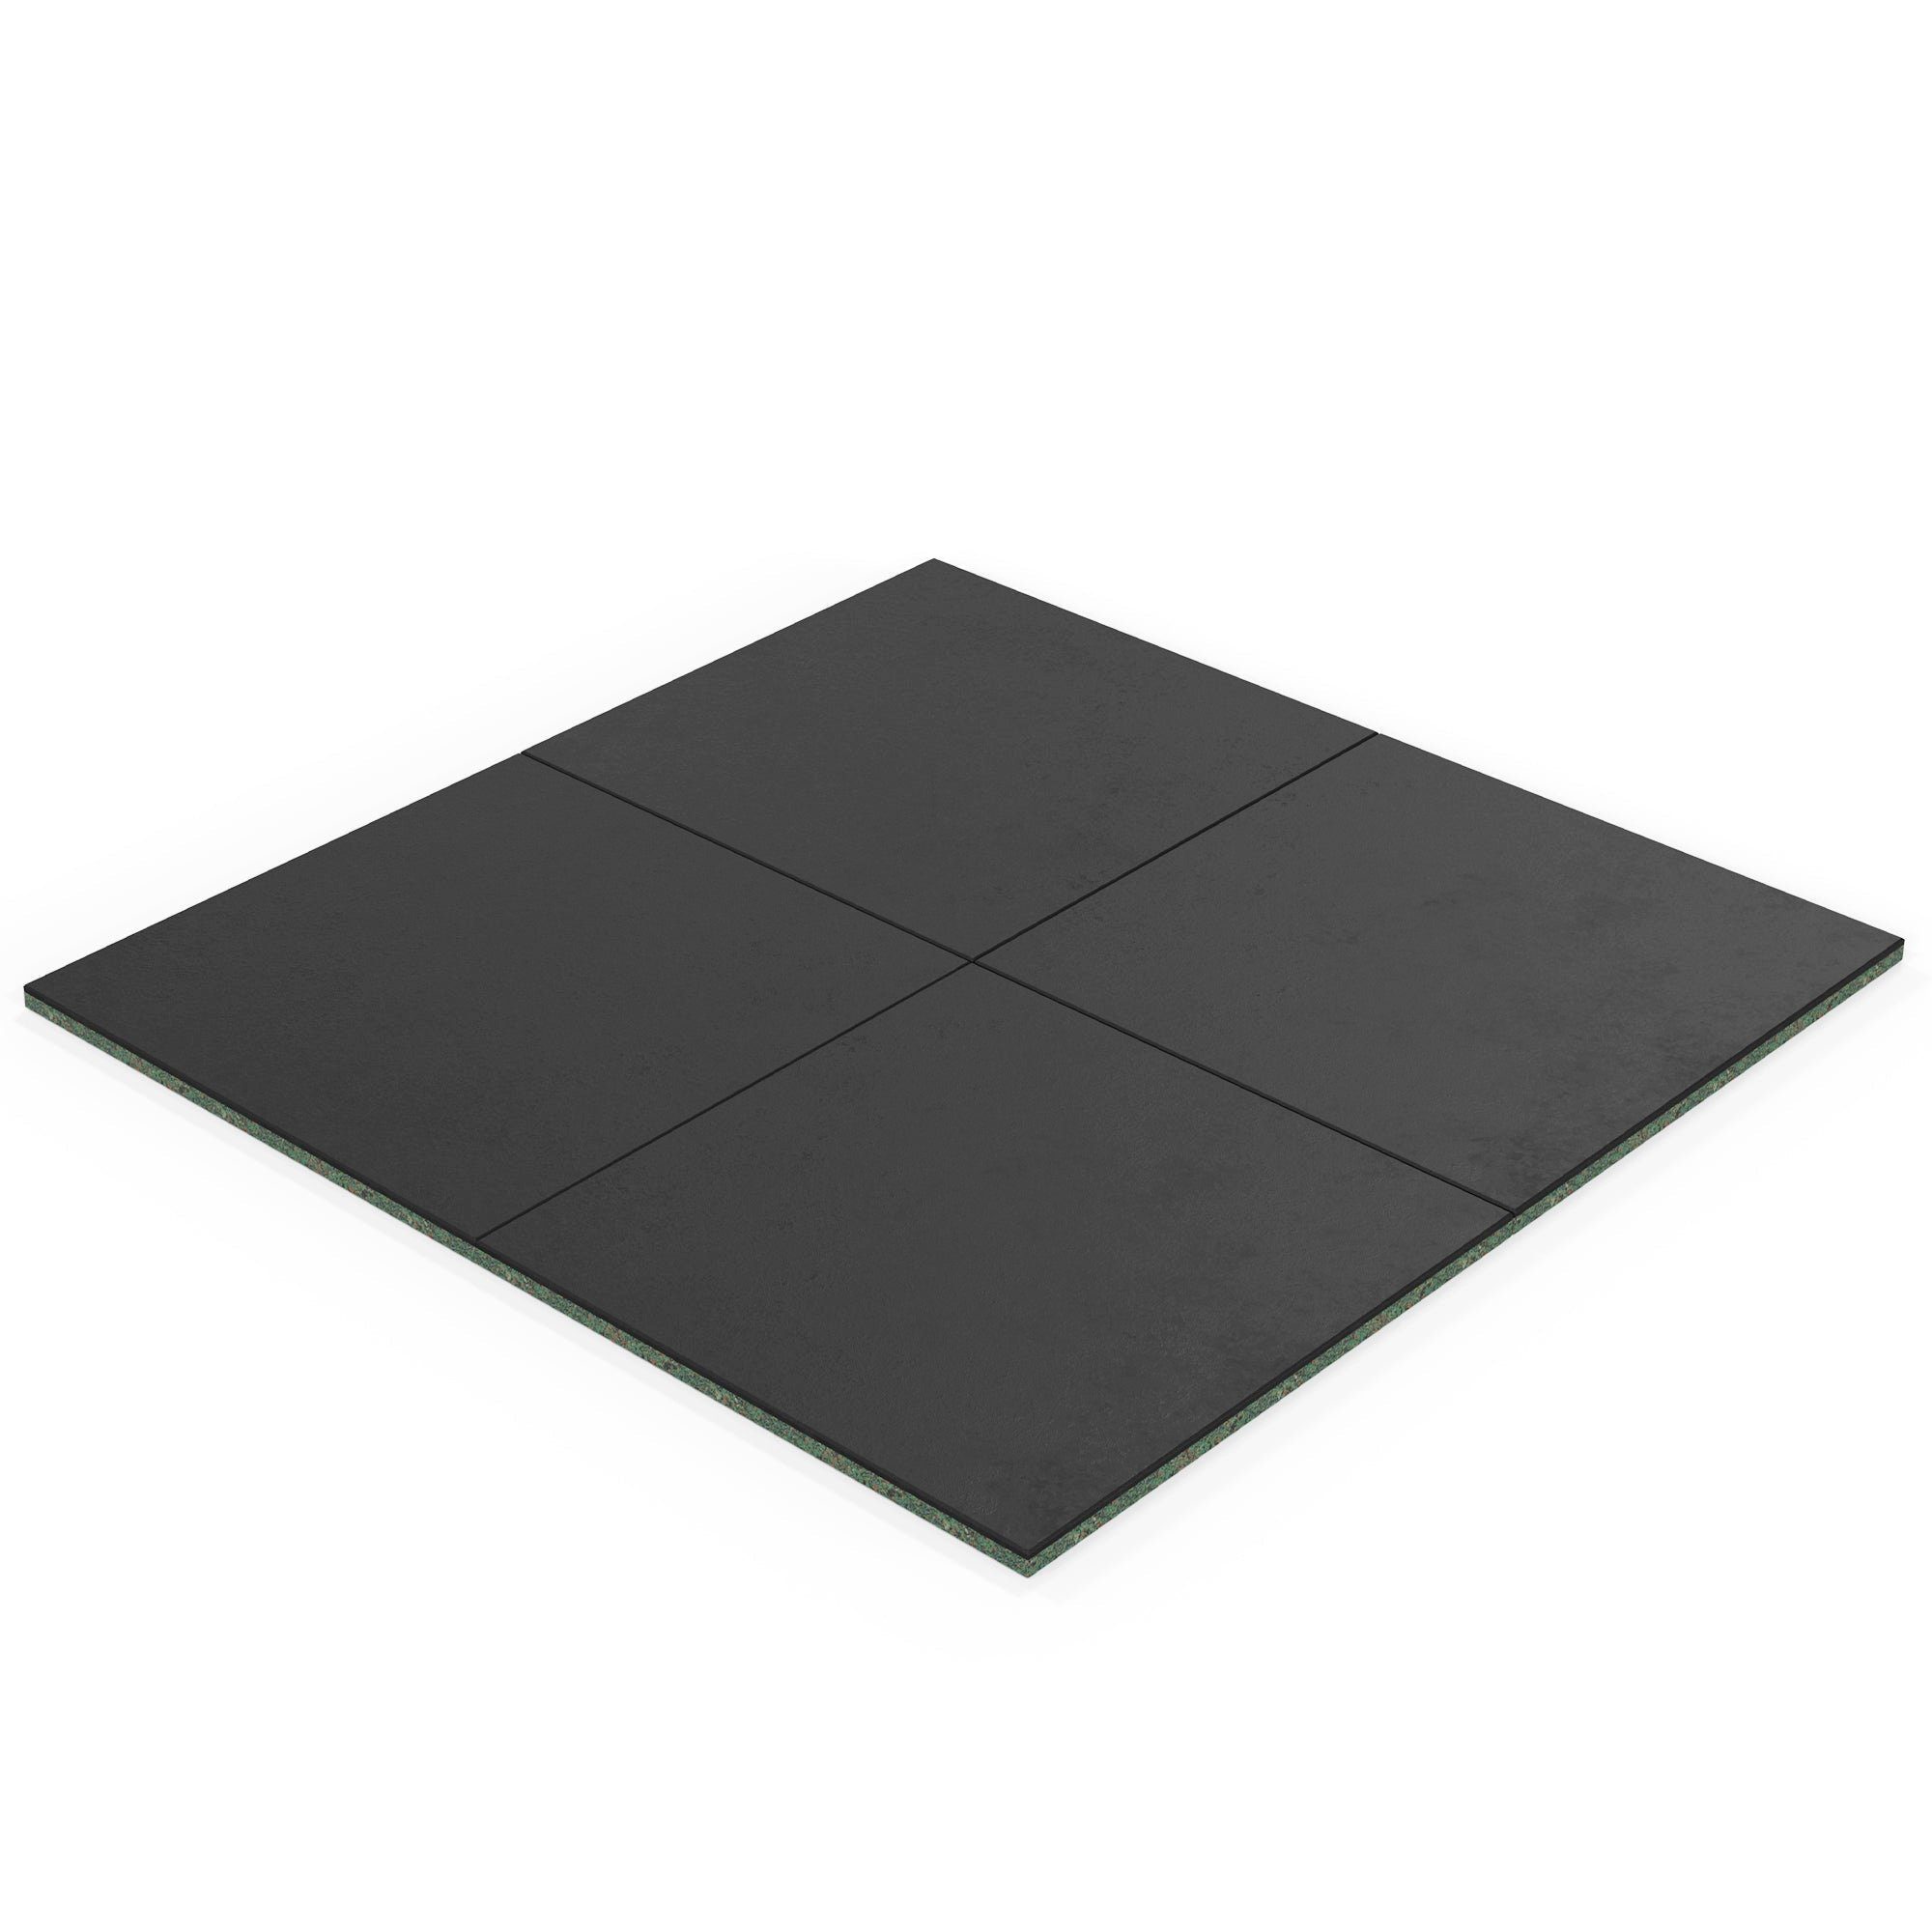 ATLETICA Bodenmatte, 20m2 SolidProtect Bodenschutzmatten 20 mm, Keltan EPDM Material